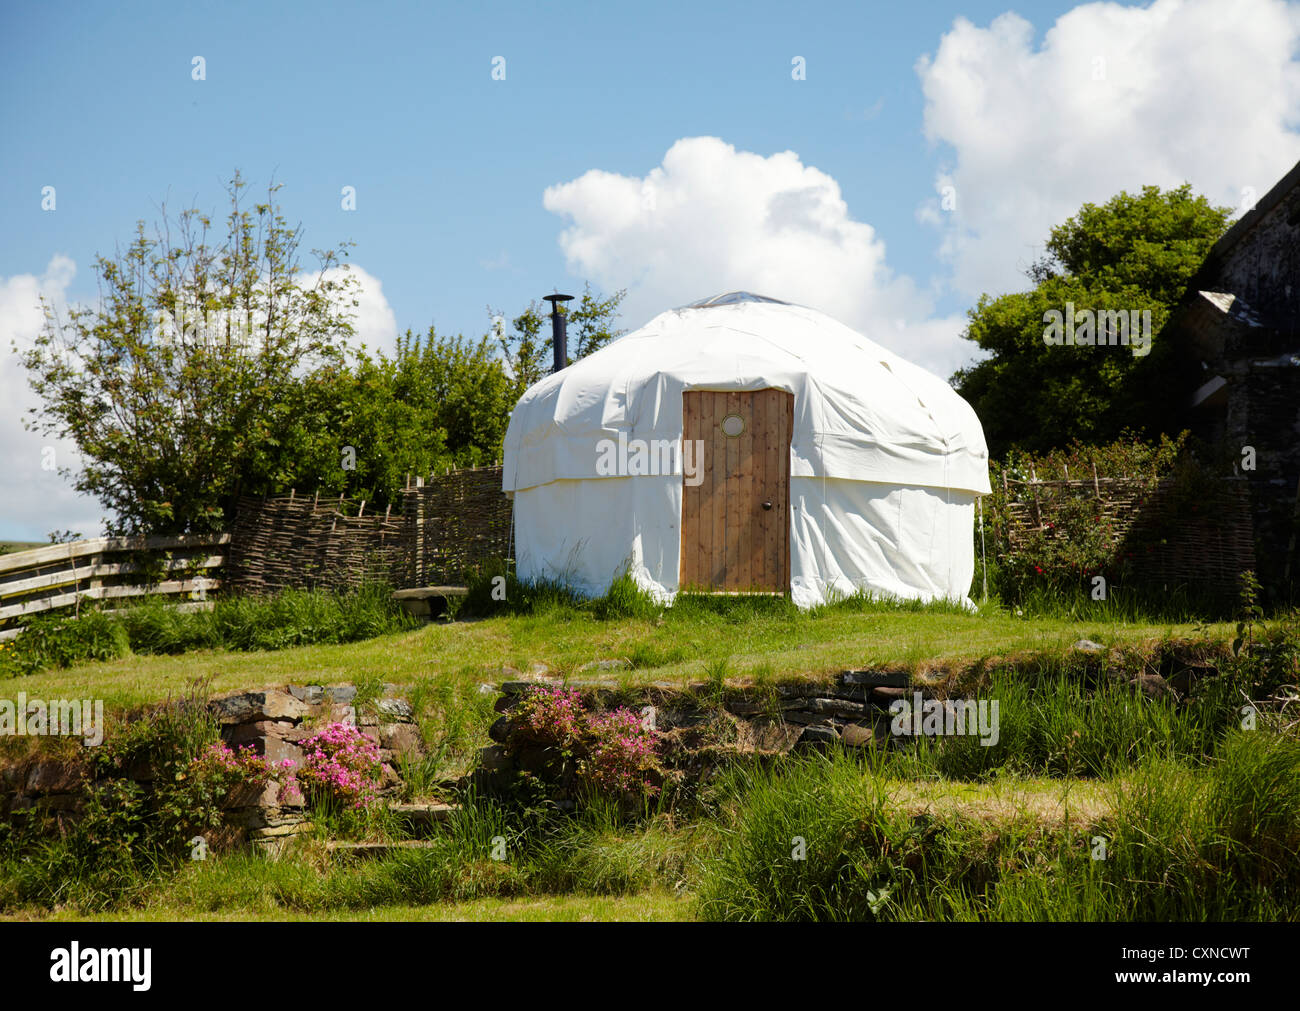 Hand made ten foot diameter yurt tent in garden setting Stock Photo